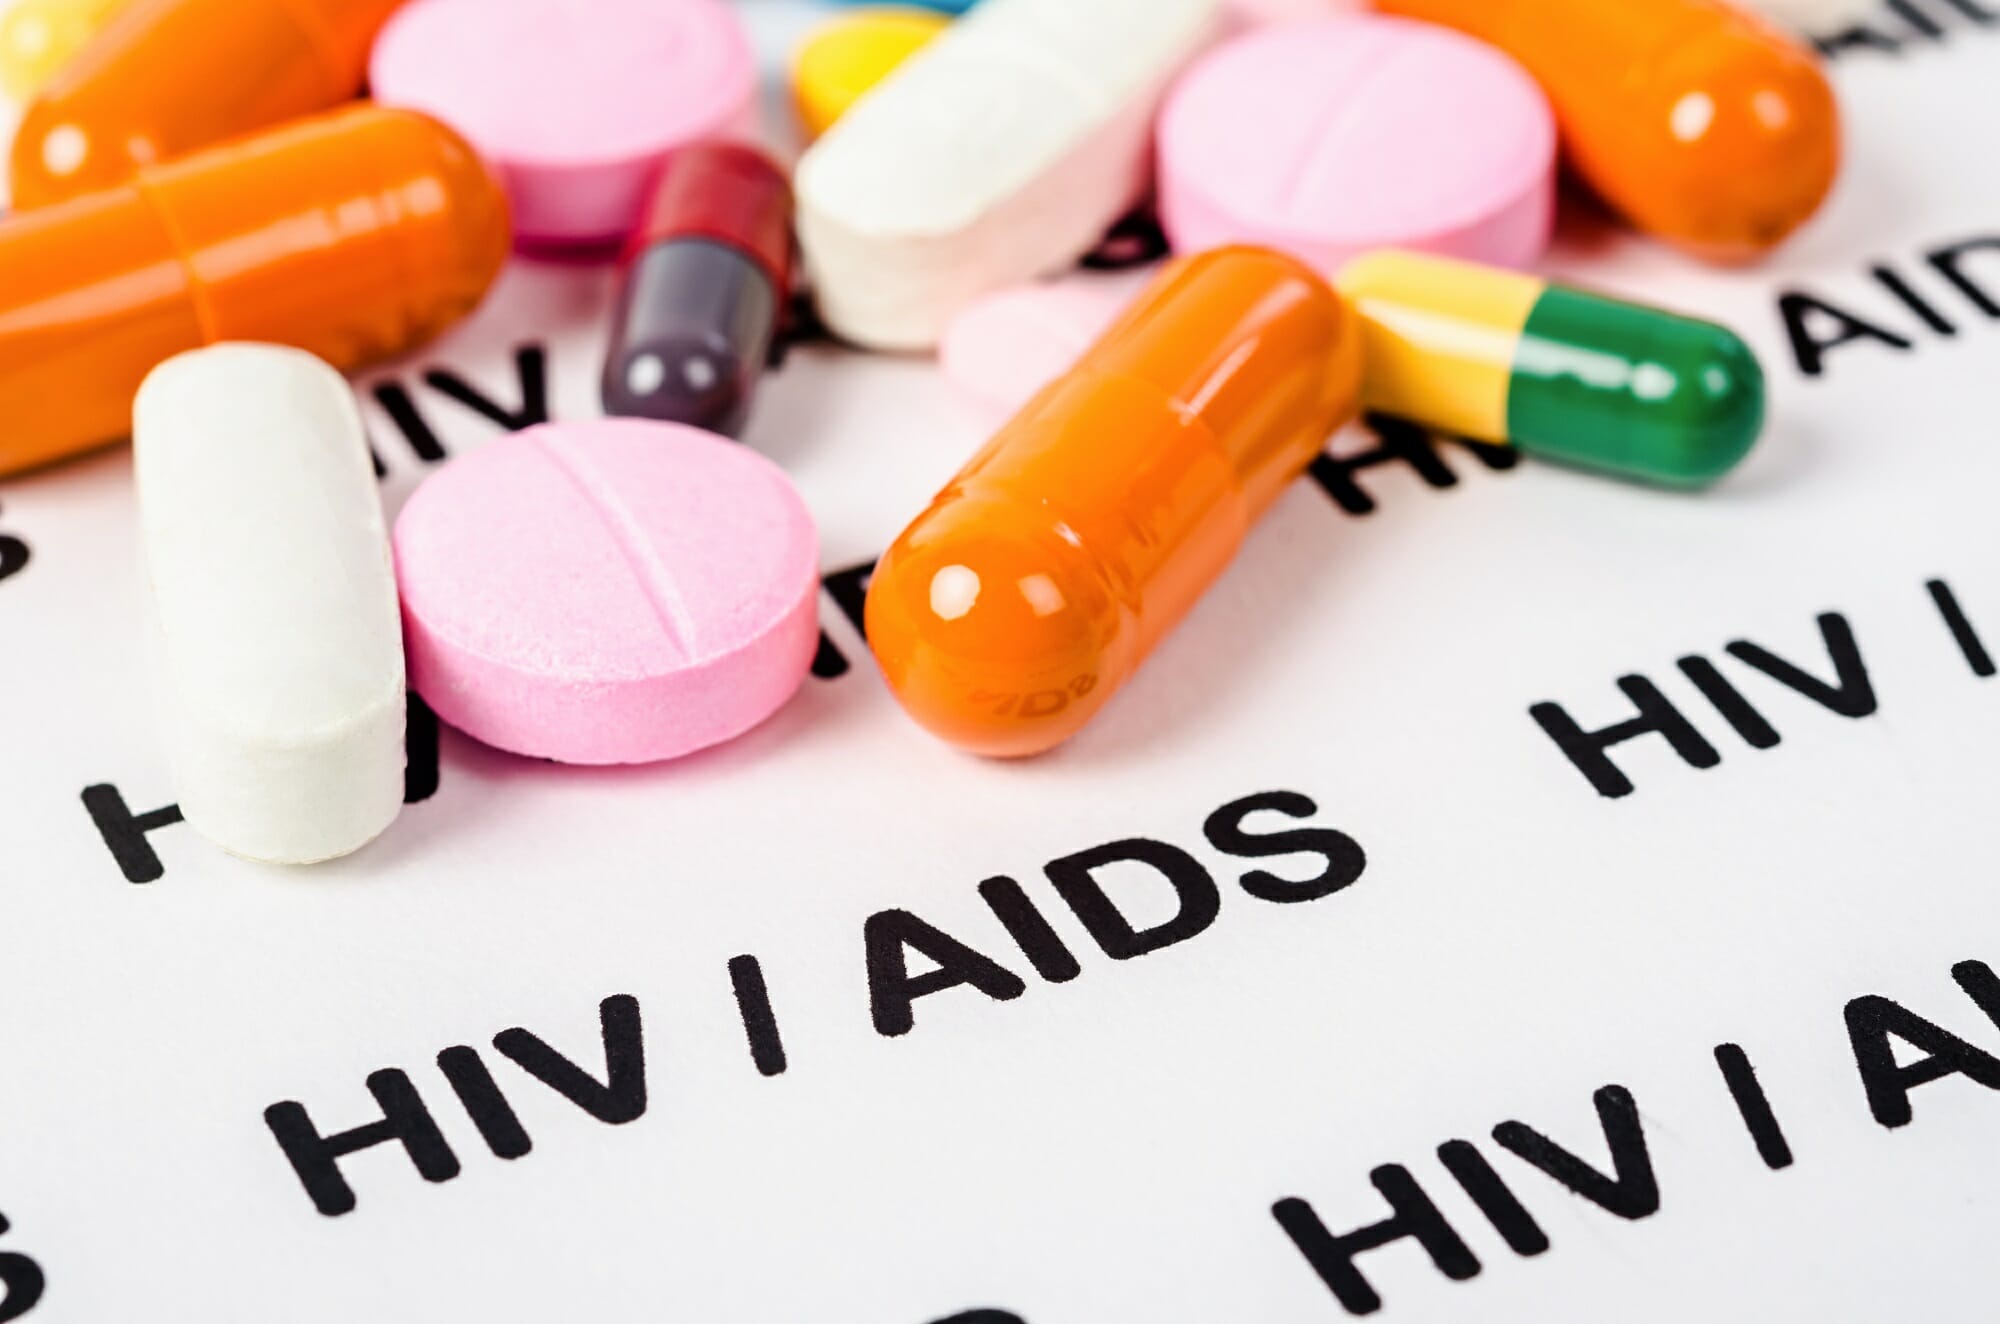 Nigeria: US Disease Control Declares Free HIV Treatment